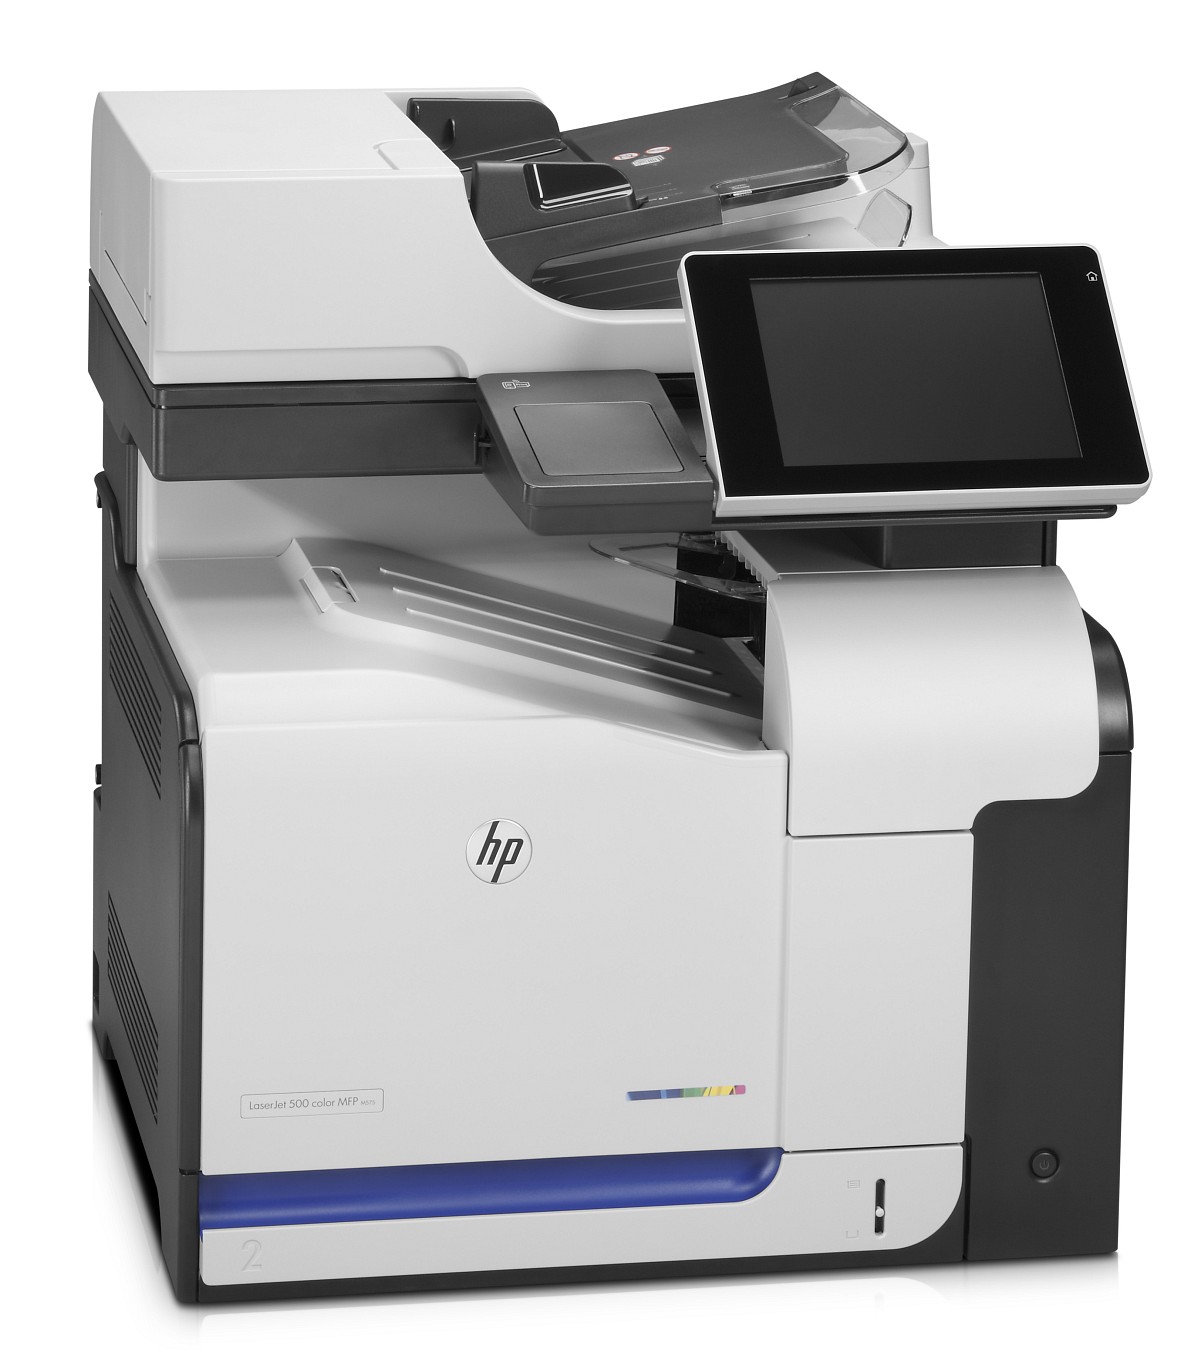 HP LaserJet Enterprise 500 M575dn (CD644A)